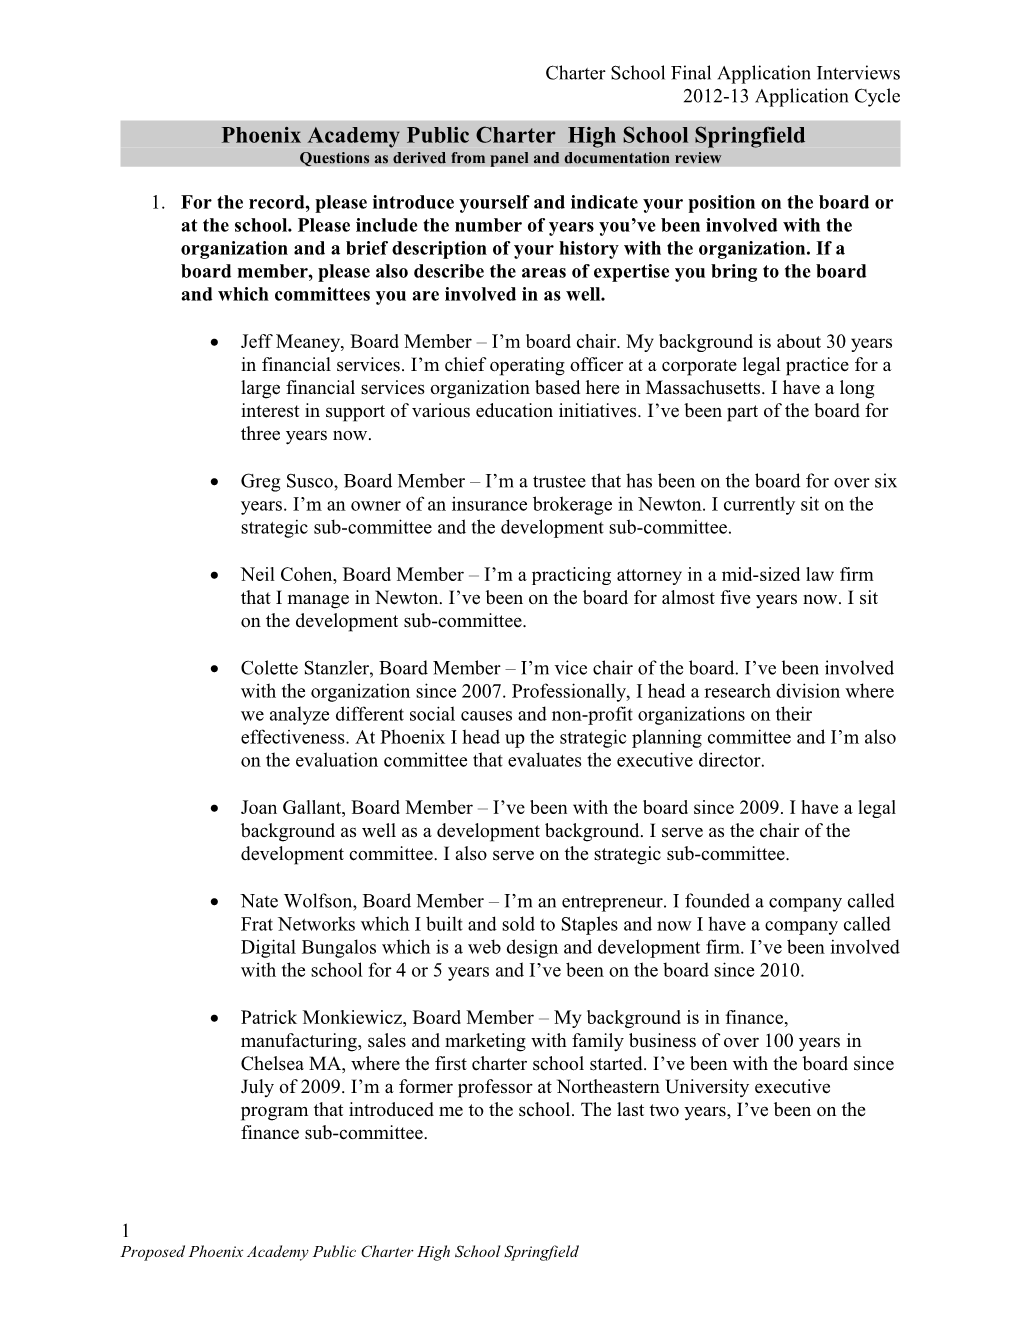 Board Memorandum Attachment, Charter School Applicants and Major Amendments, Phoenix Academy